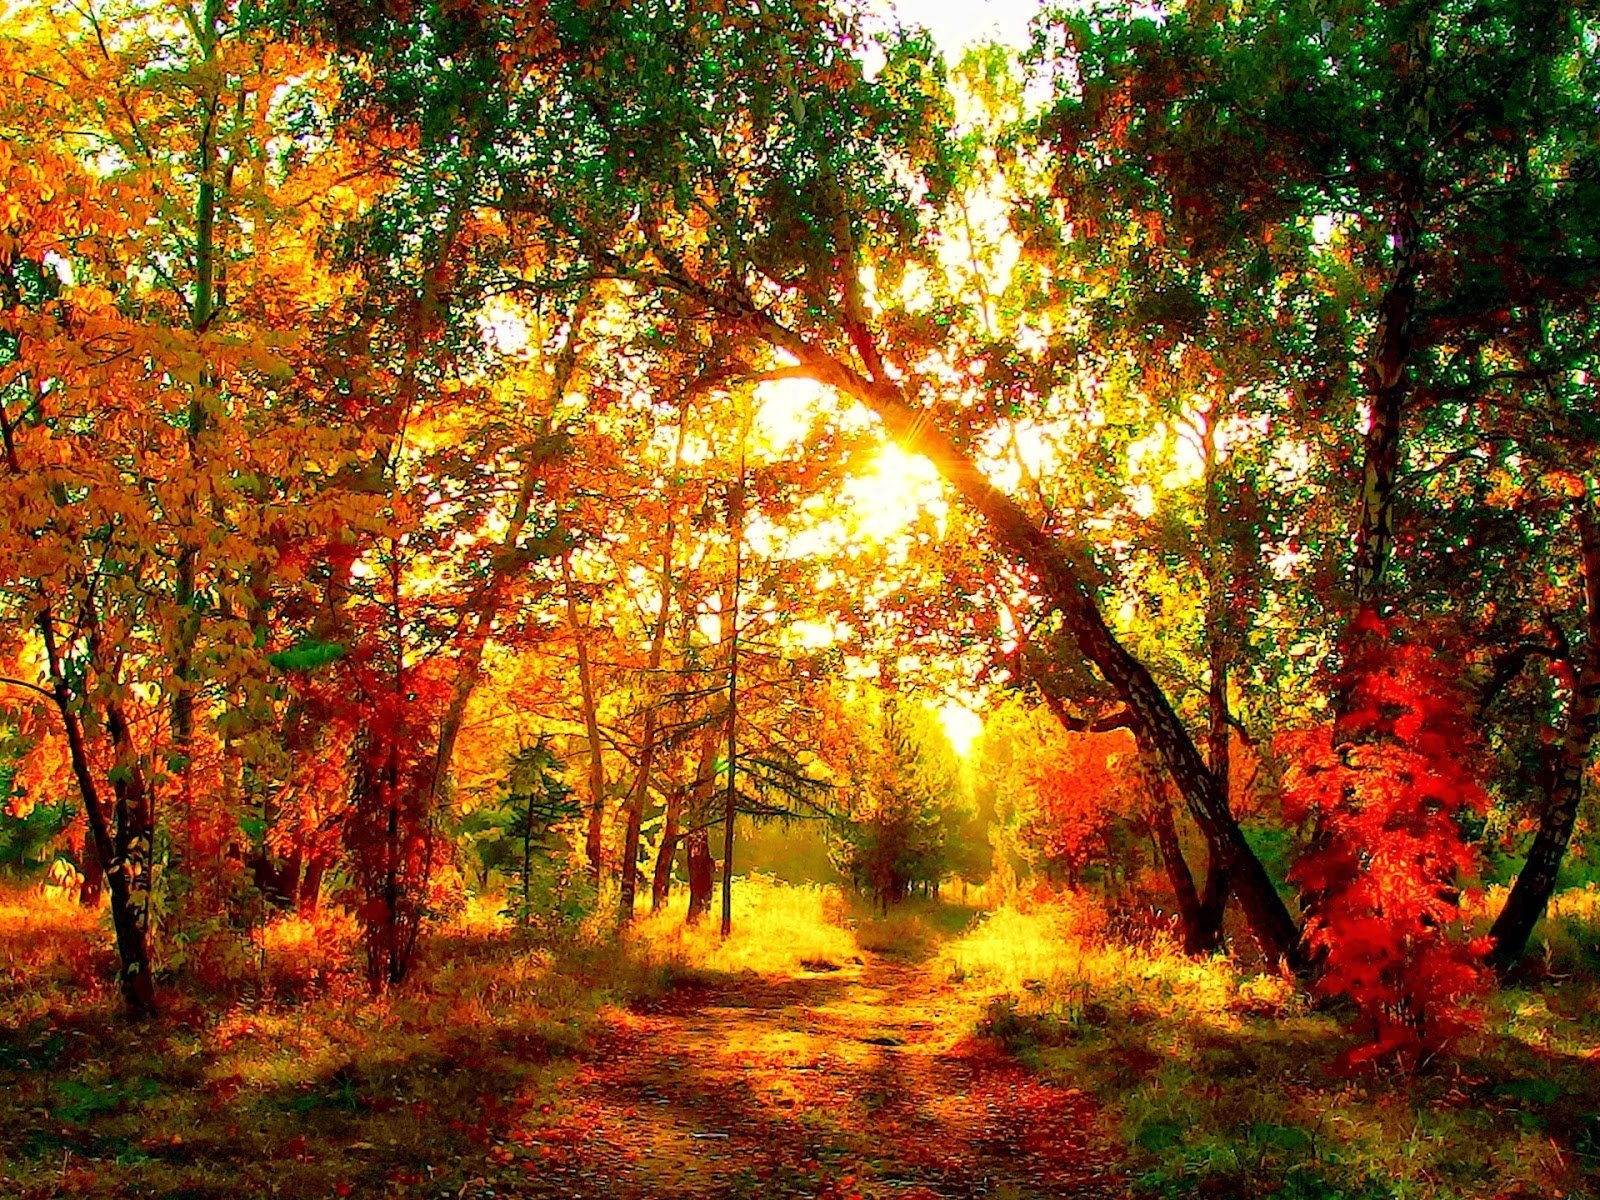 Пестрая стена леса. Лес осенний- Терем расписной. Лес расписной лиловый золотой багряный. Осенний лес точно Терем расписной. Осенний лес золотой багряный.